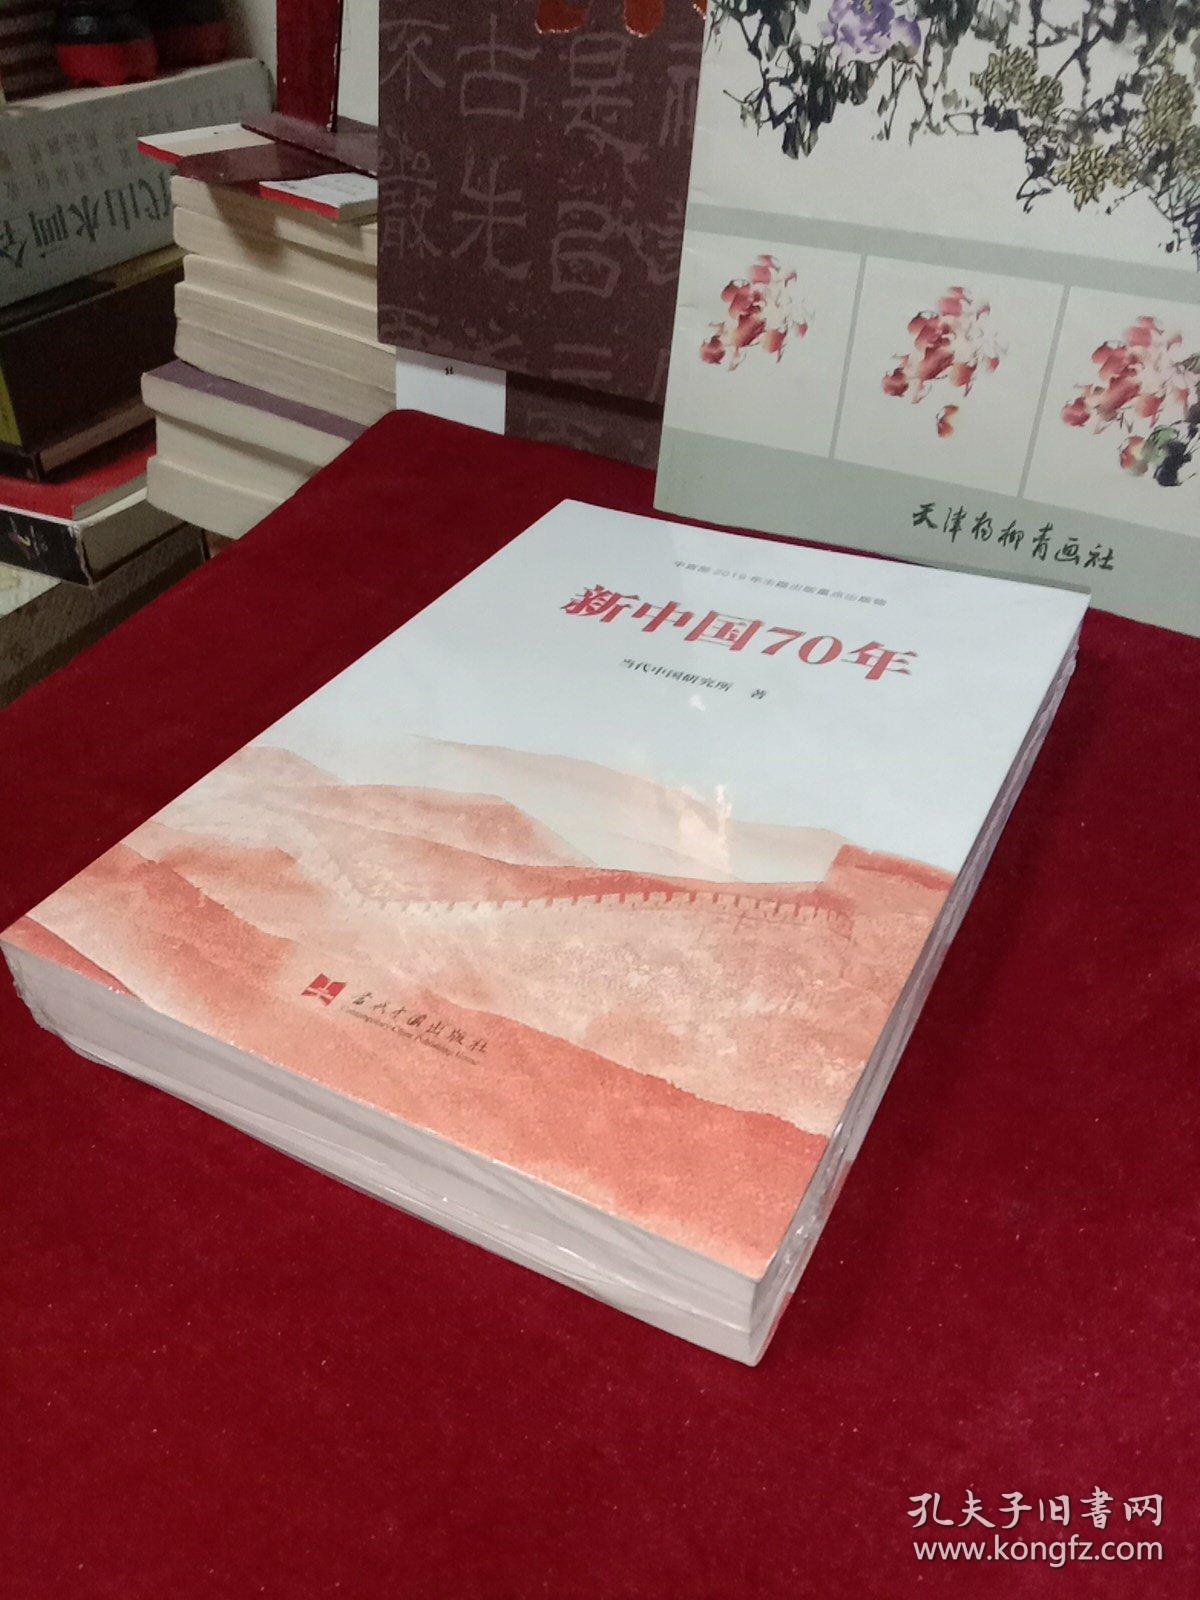 中宣部2019年主题出版重点出版物: 新中国70年